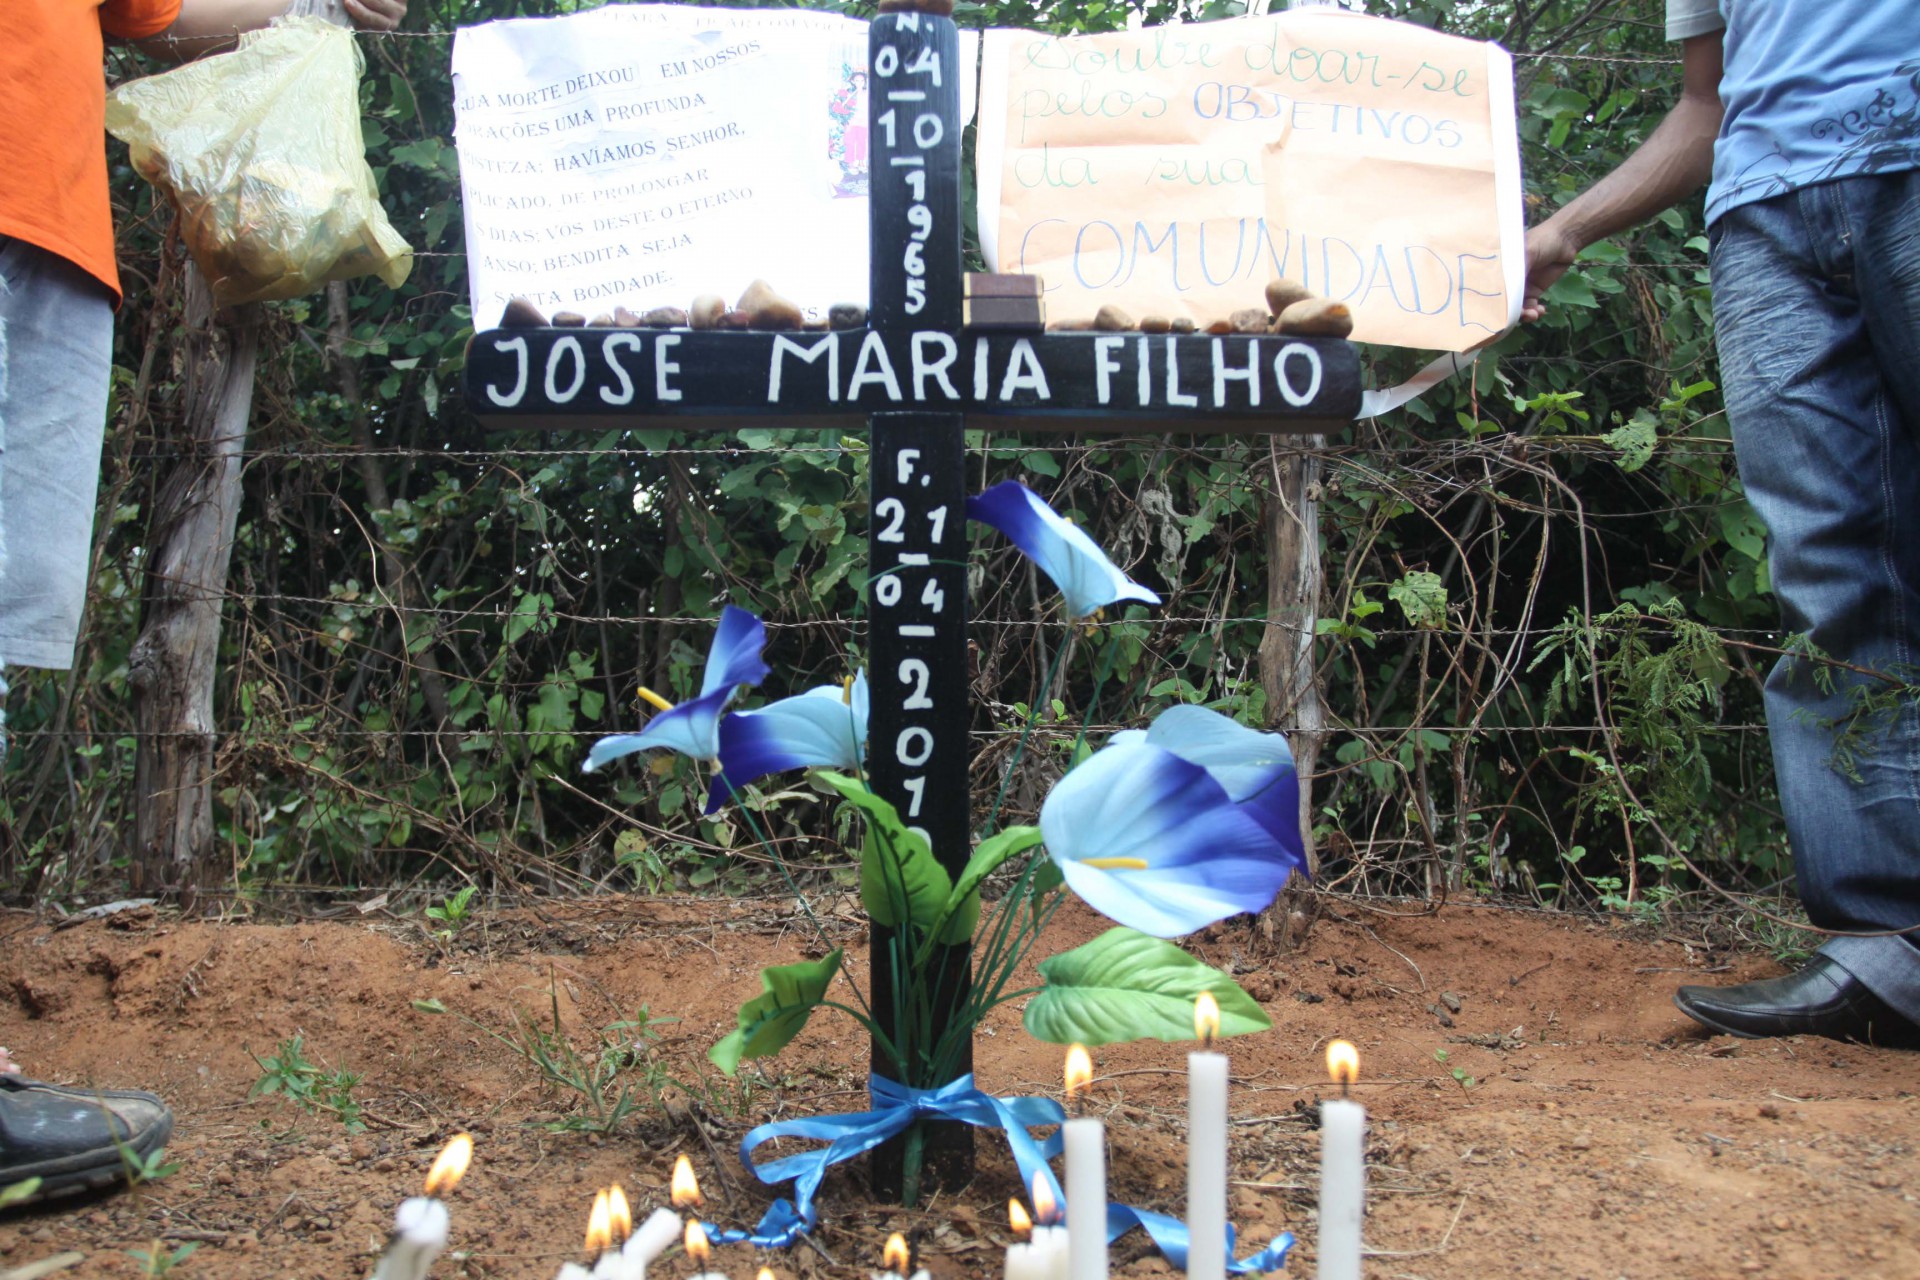 6/5/2010 - Limoeiro do Norte - Homenagem ao líder rural José Zé Maria do Tomé, assassinado em confronto sobre pulverização aérea na Chapada do Apodi, em Limoeiro do Norte.  (Foto: Deivyson Teixeira, em 06/05/2010)